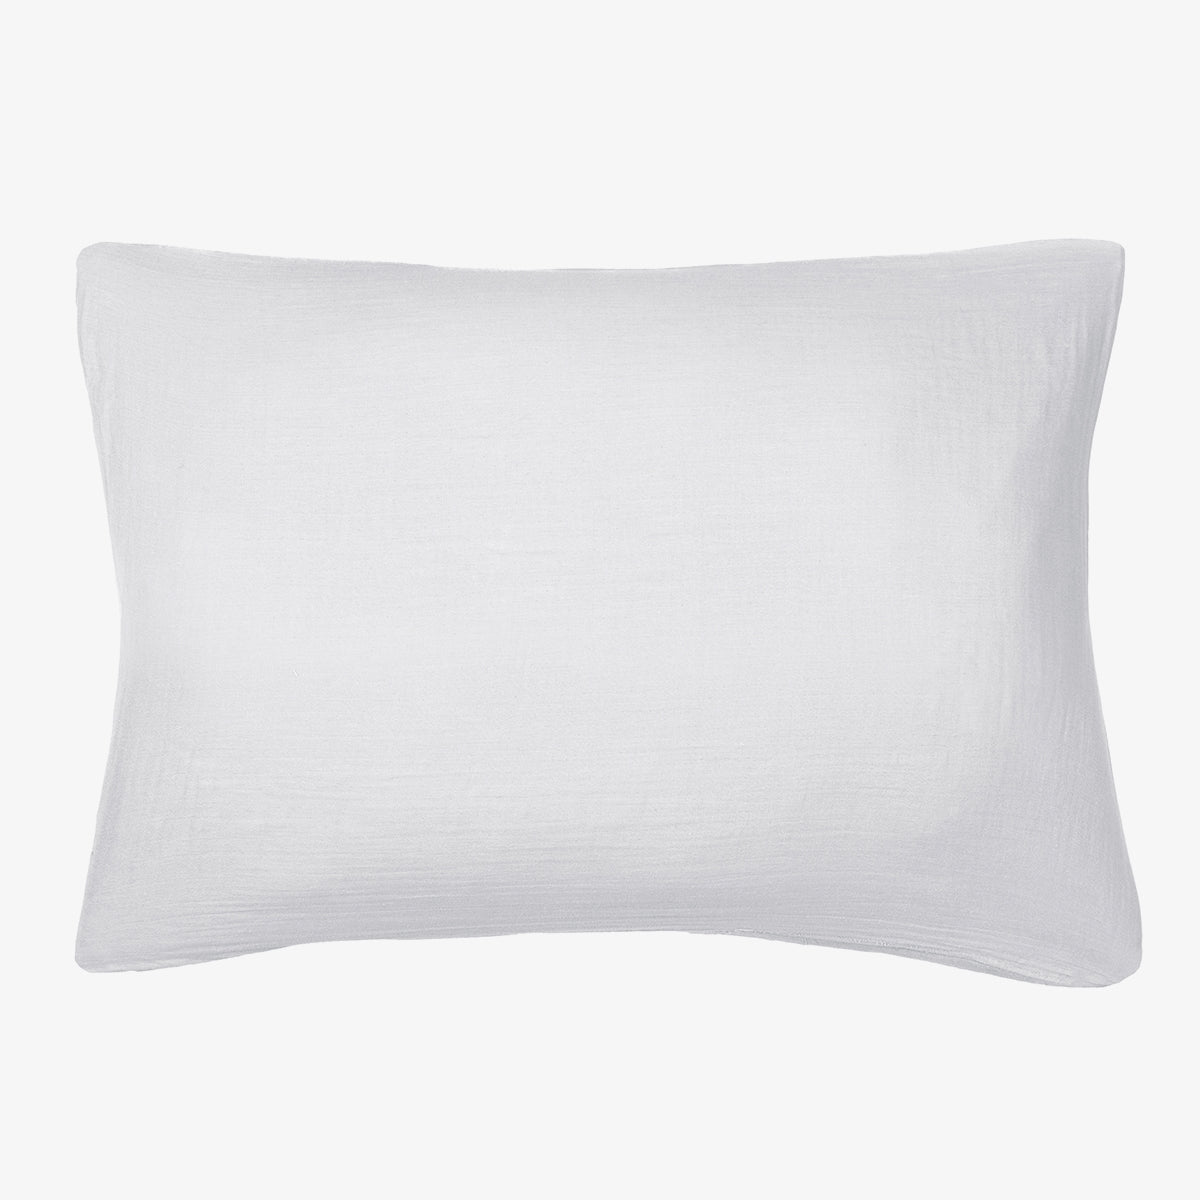 1x Taie d'oreiller en gaze de coton 50x70 blanc neige